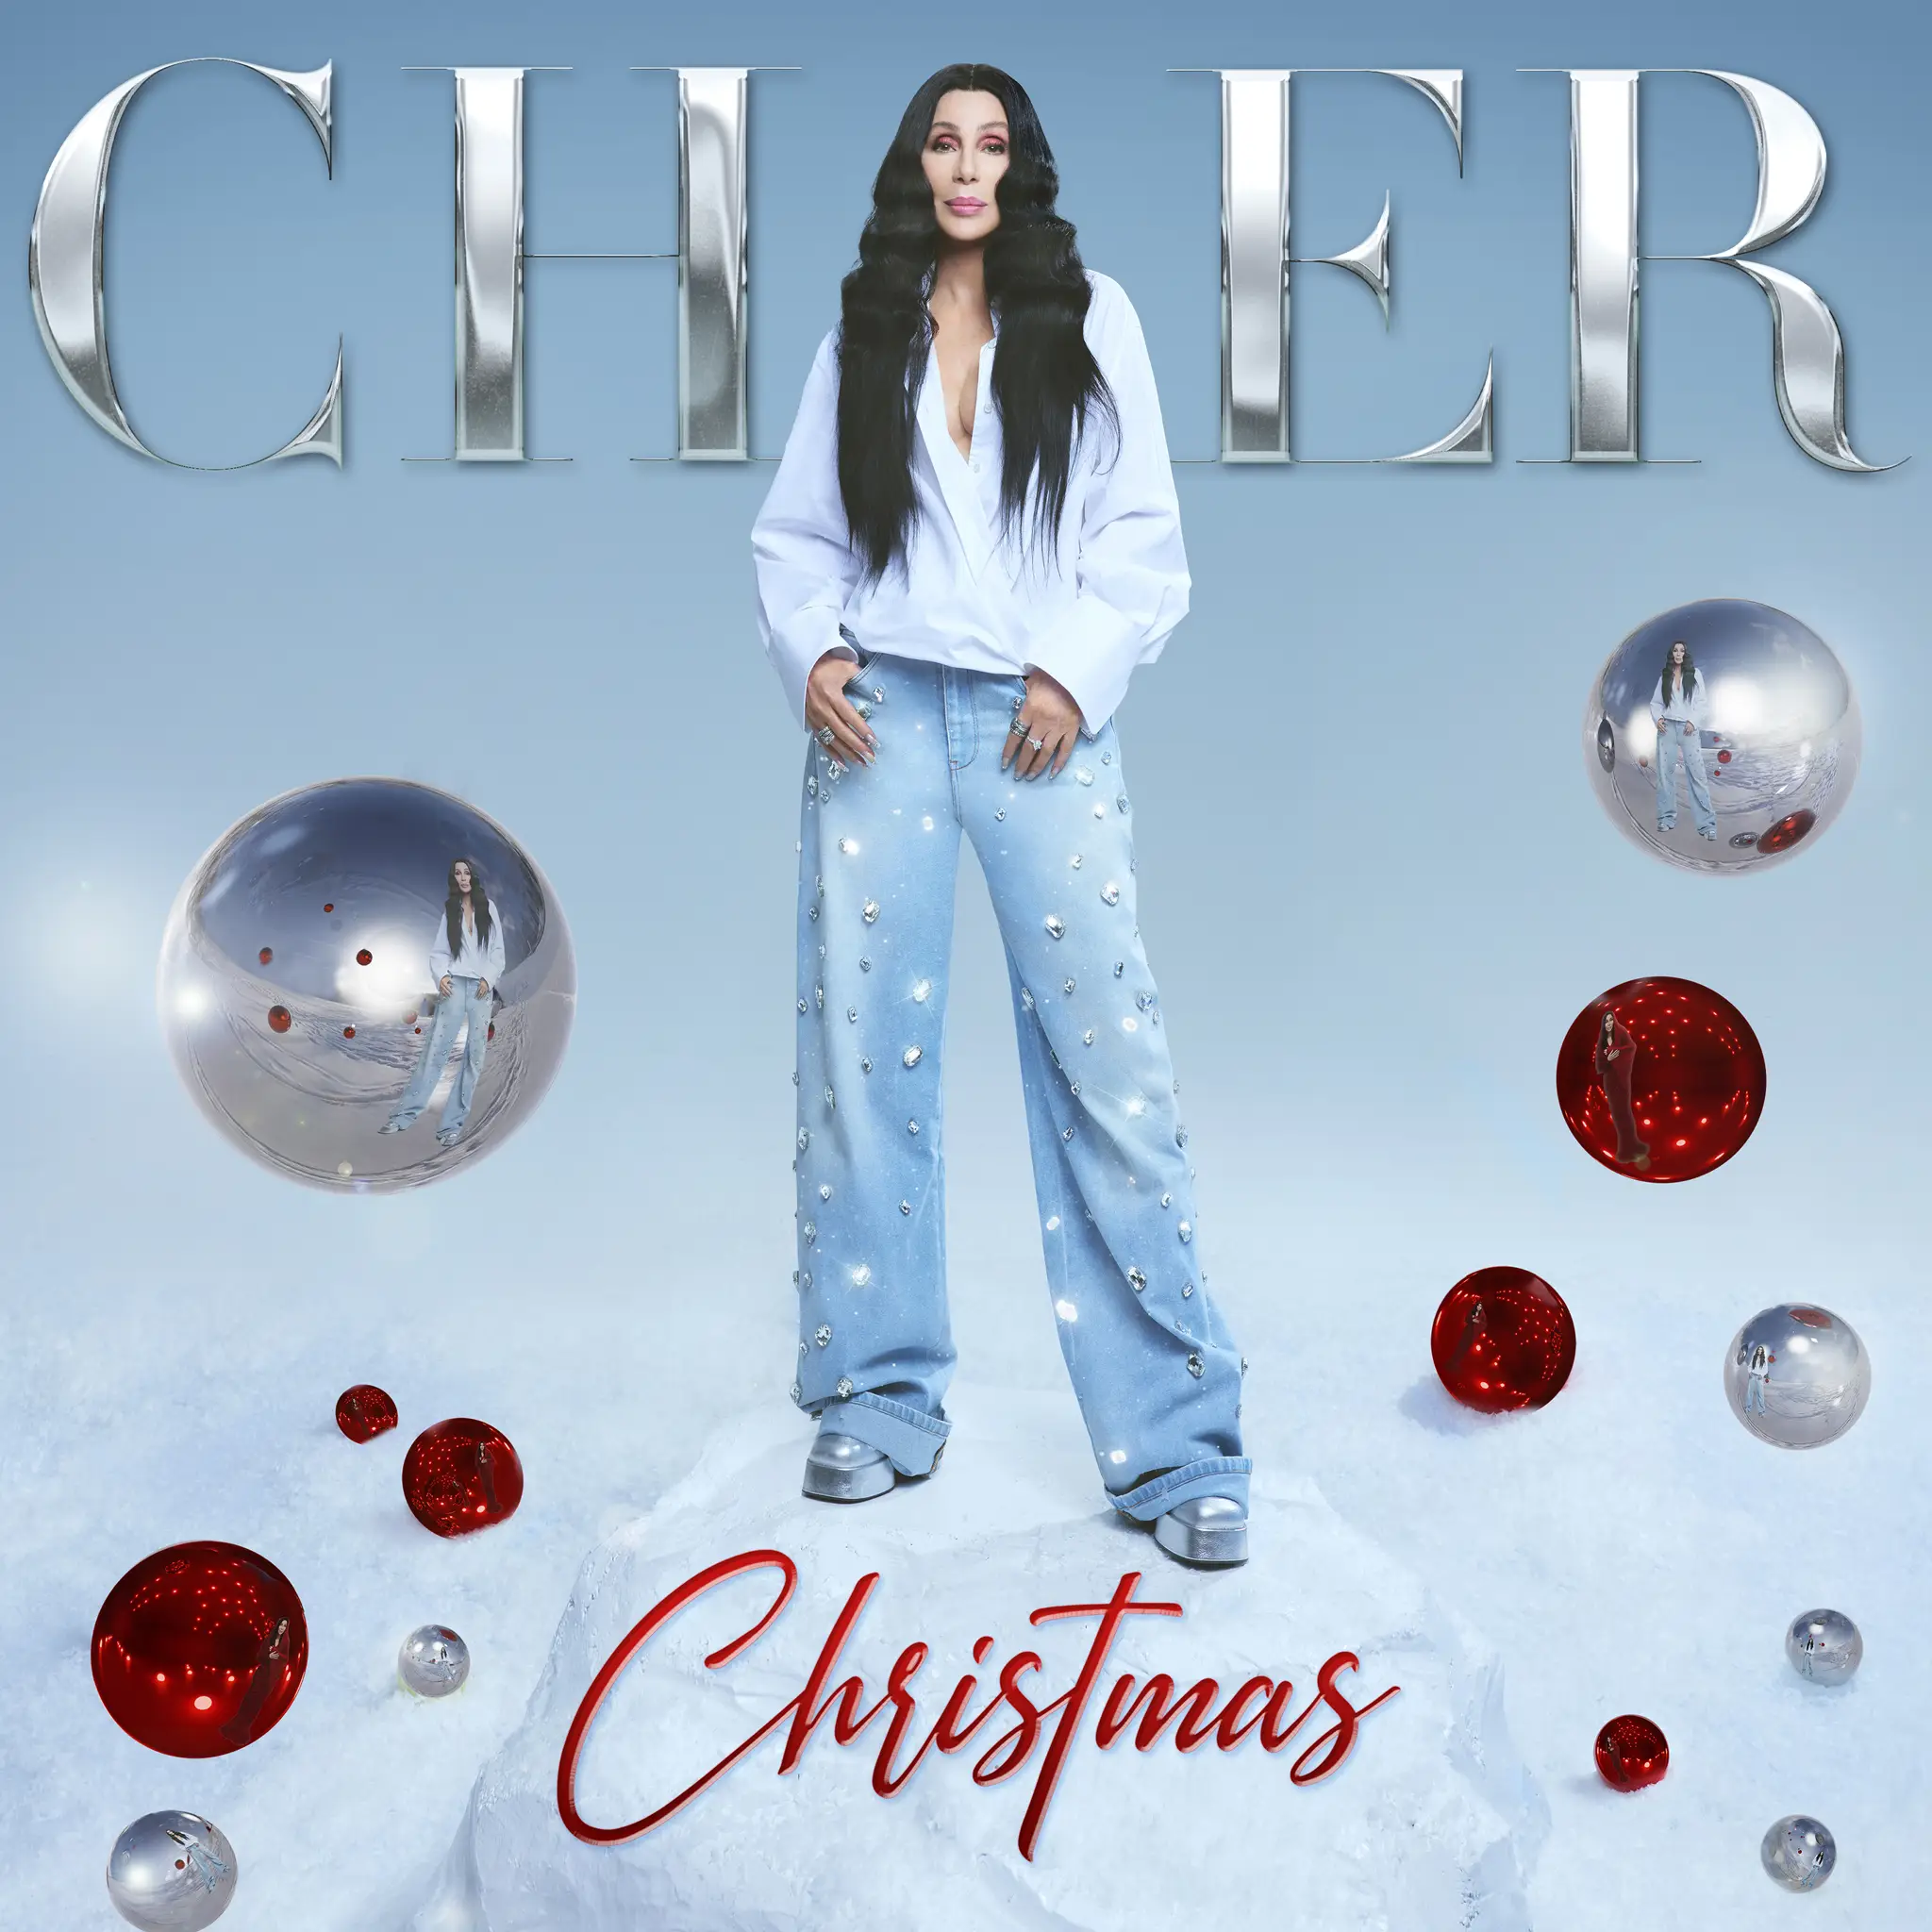 Cher - Christmas artwork